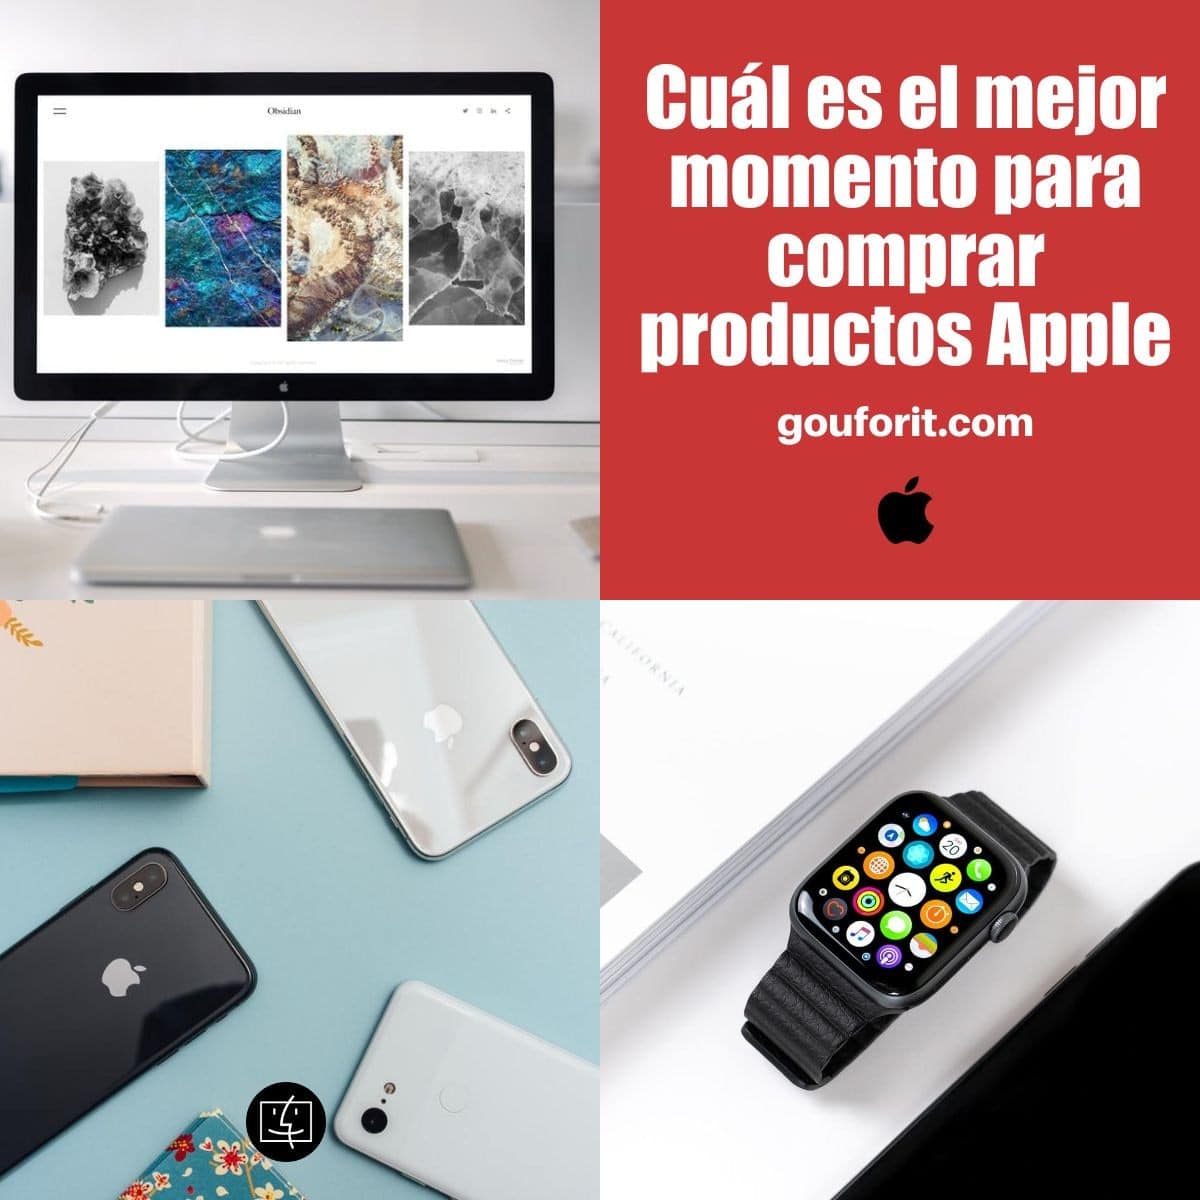 ¿Cuál es el mejor momento para comprar productos Apple (iPhone, iPad, iPod, Mac, AirPods, Apple Watch)?